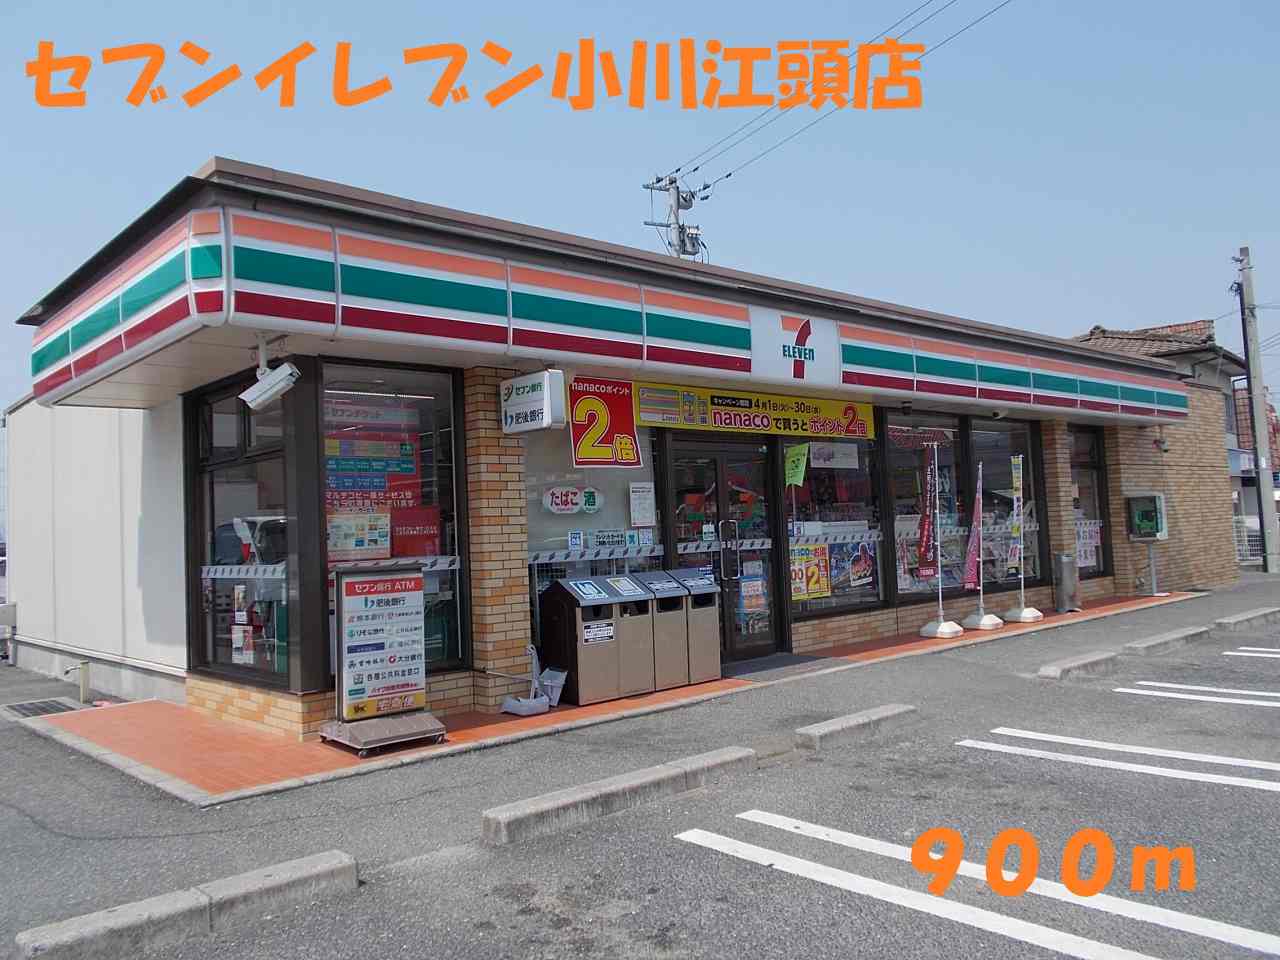 Convenience store. 900m to Seven-Eleven Ogawa EGASHIRA store (convenience store)